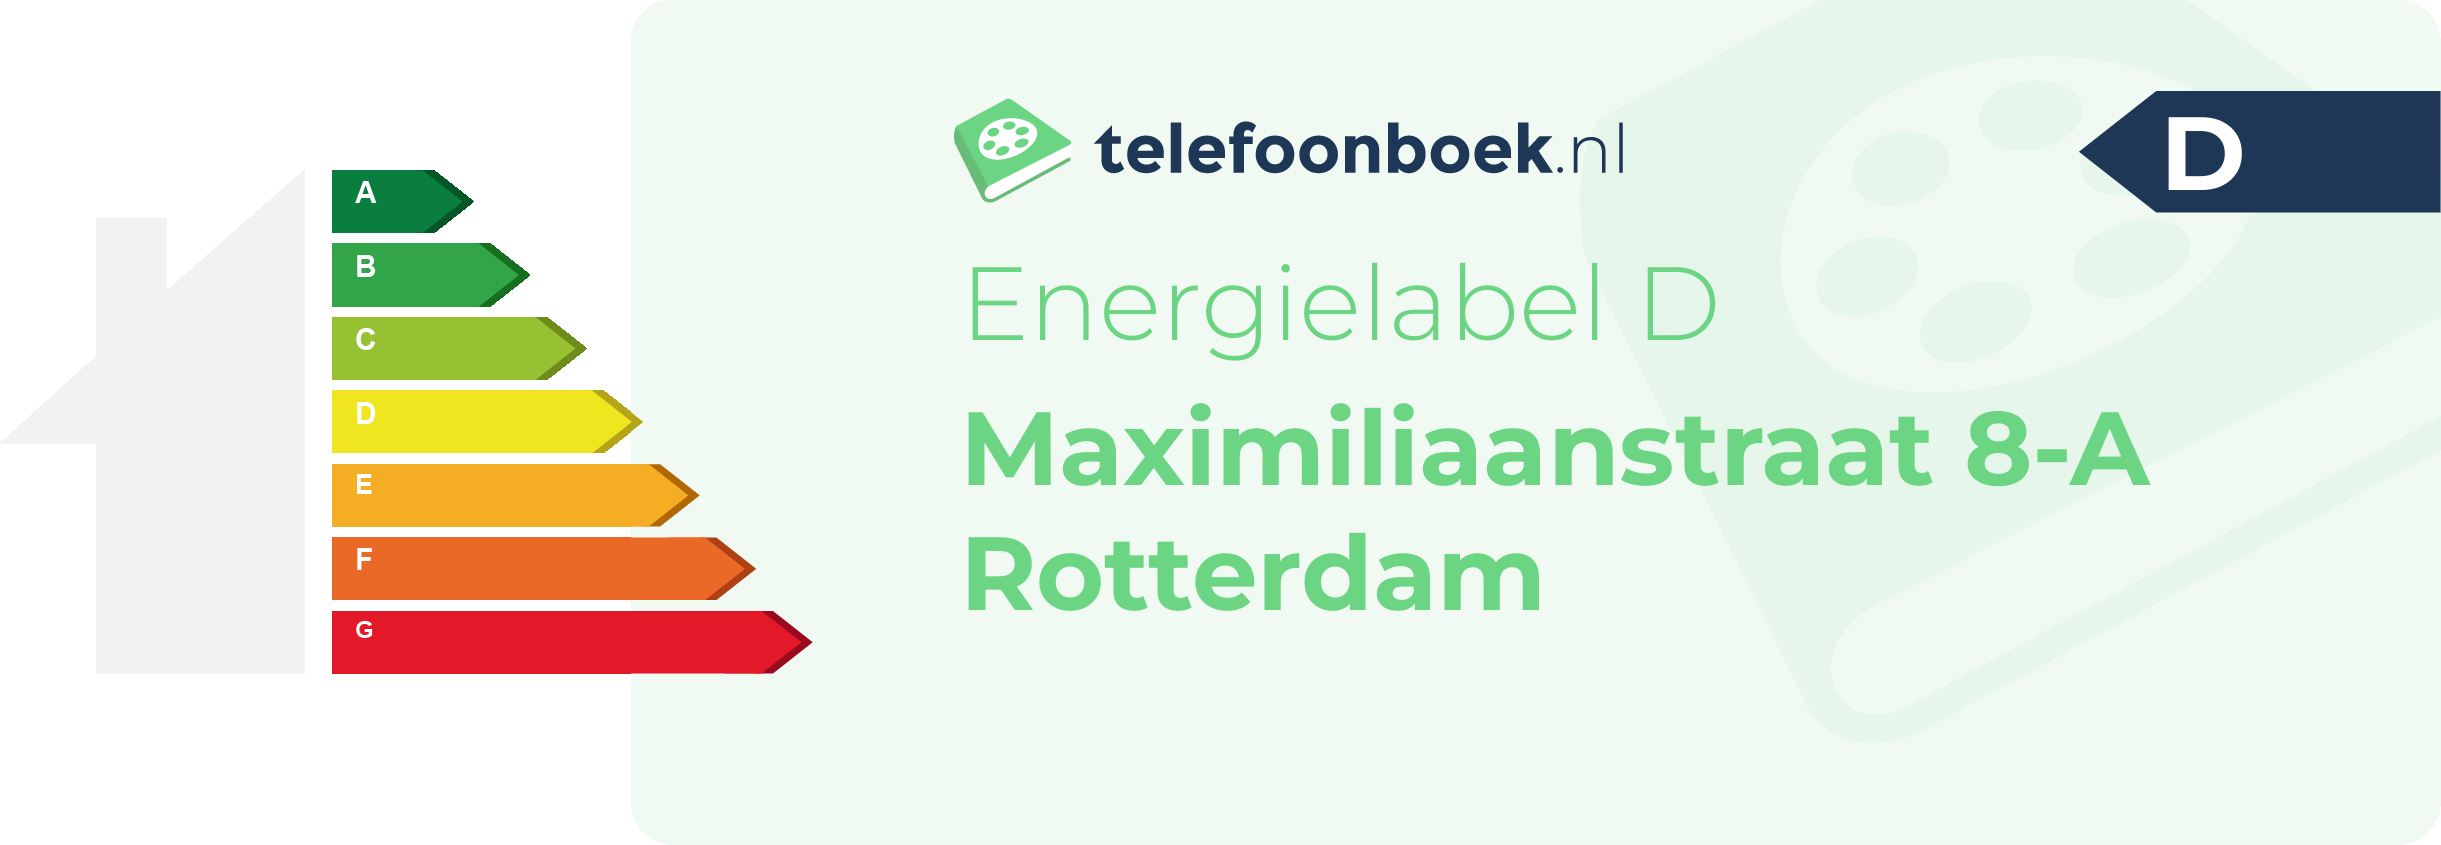 Energielabel Maximiliaanstraat 8-A Rotterdam